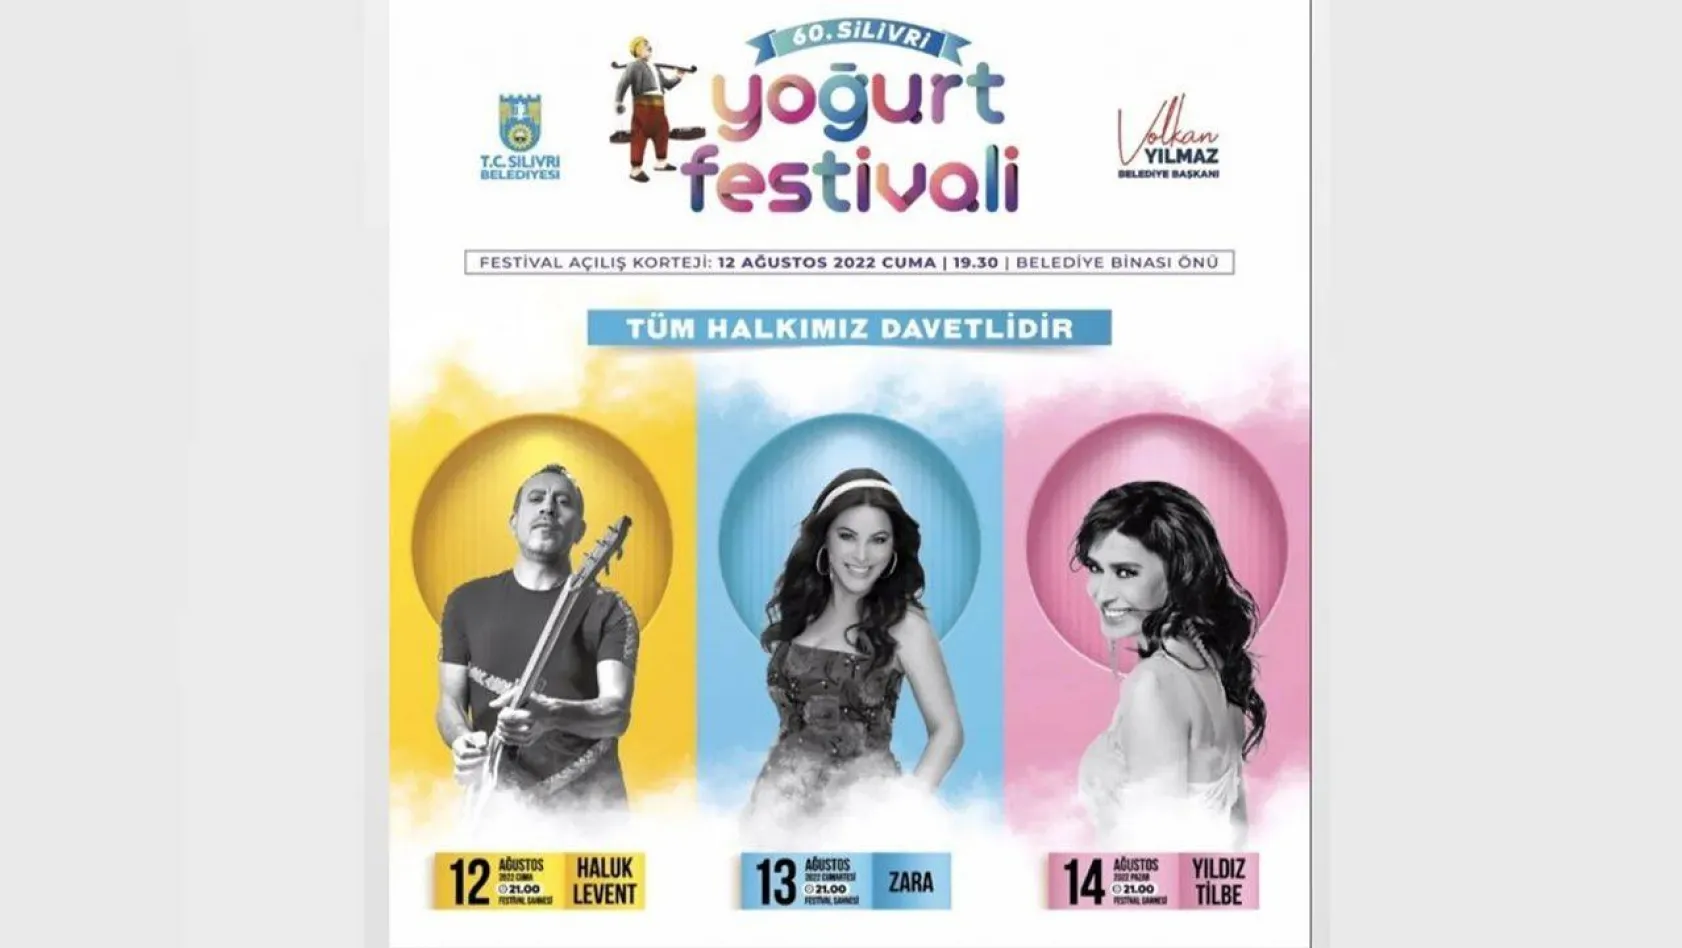 Silivri Yoğurt festivali 12 Ağustos'ta başlıyor